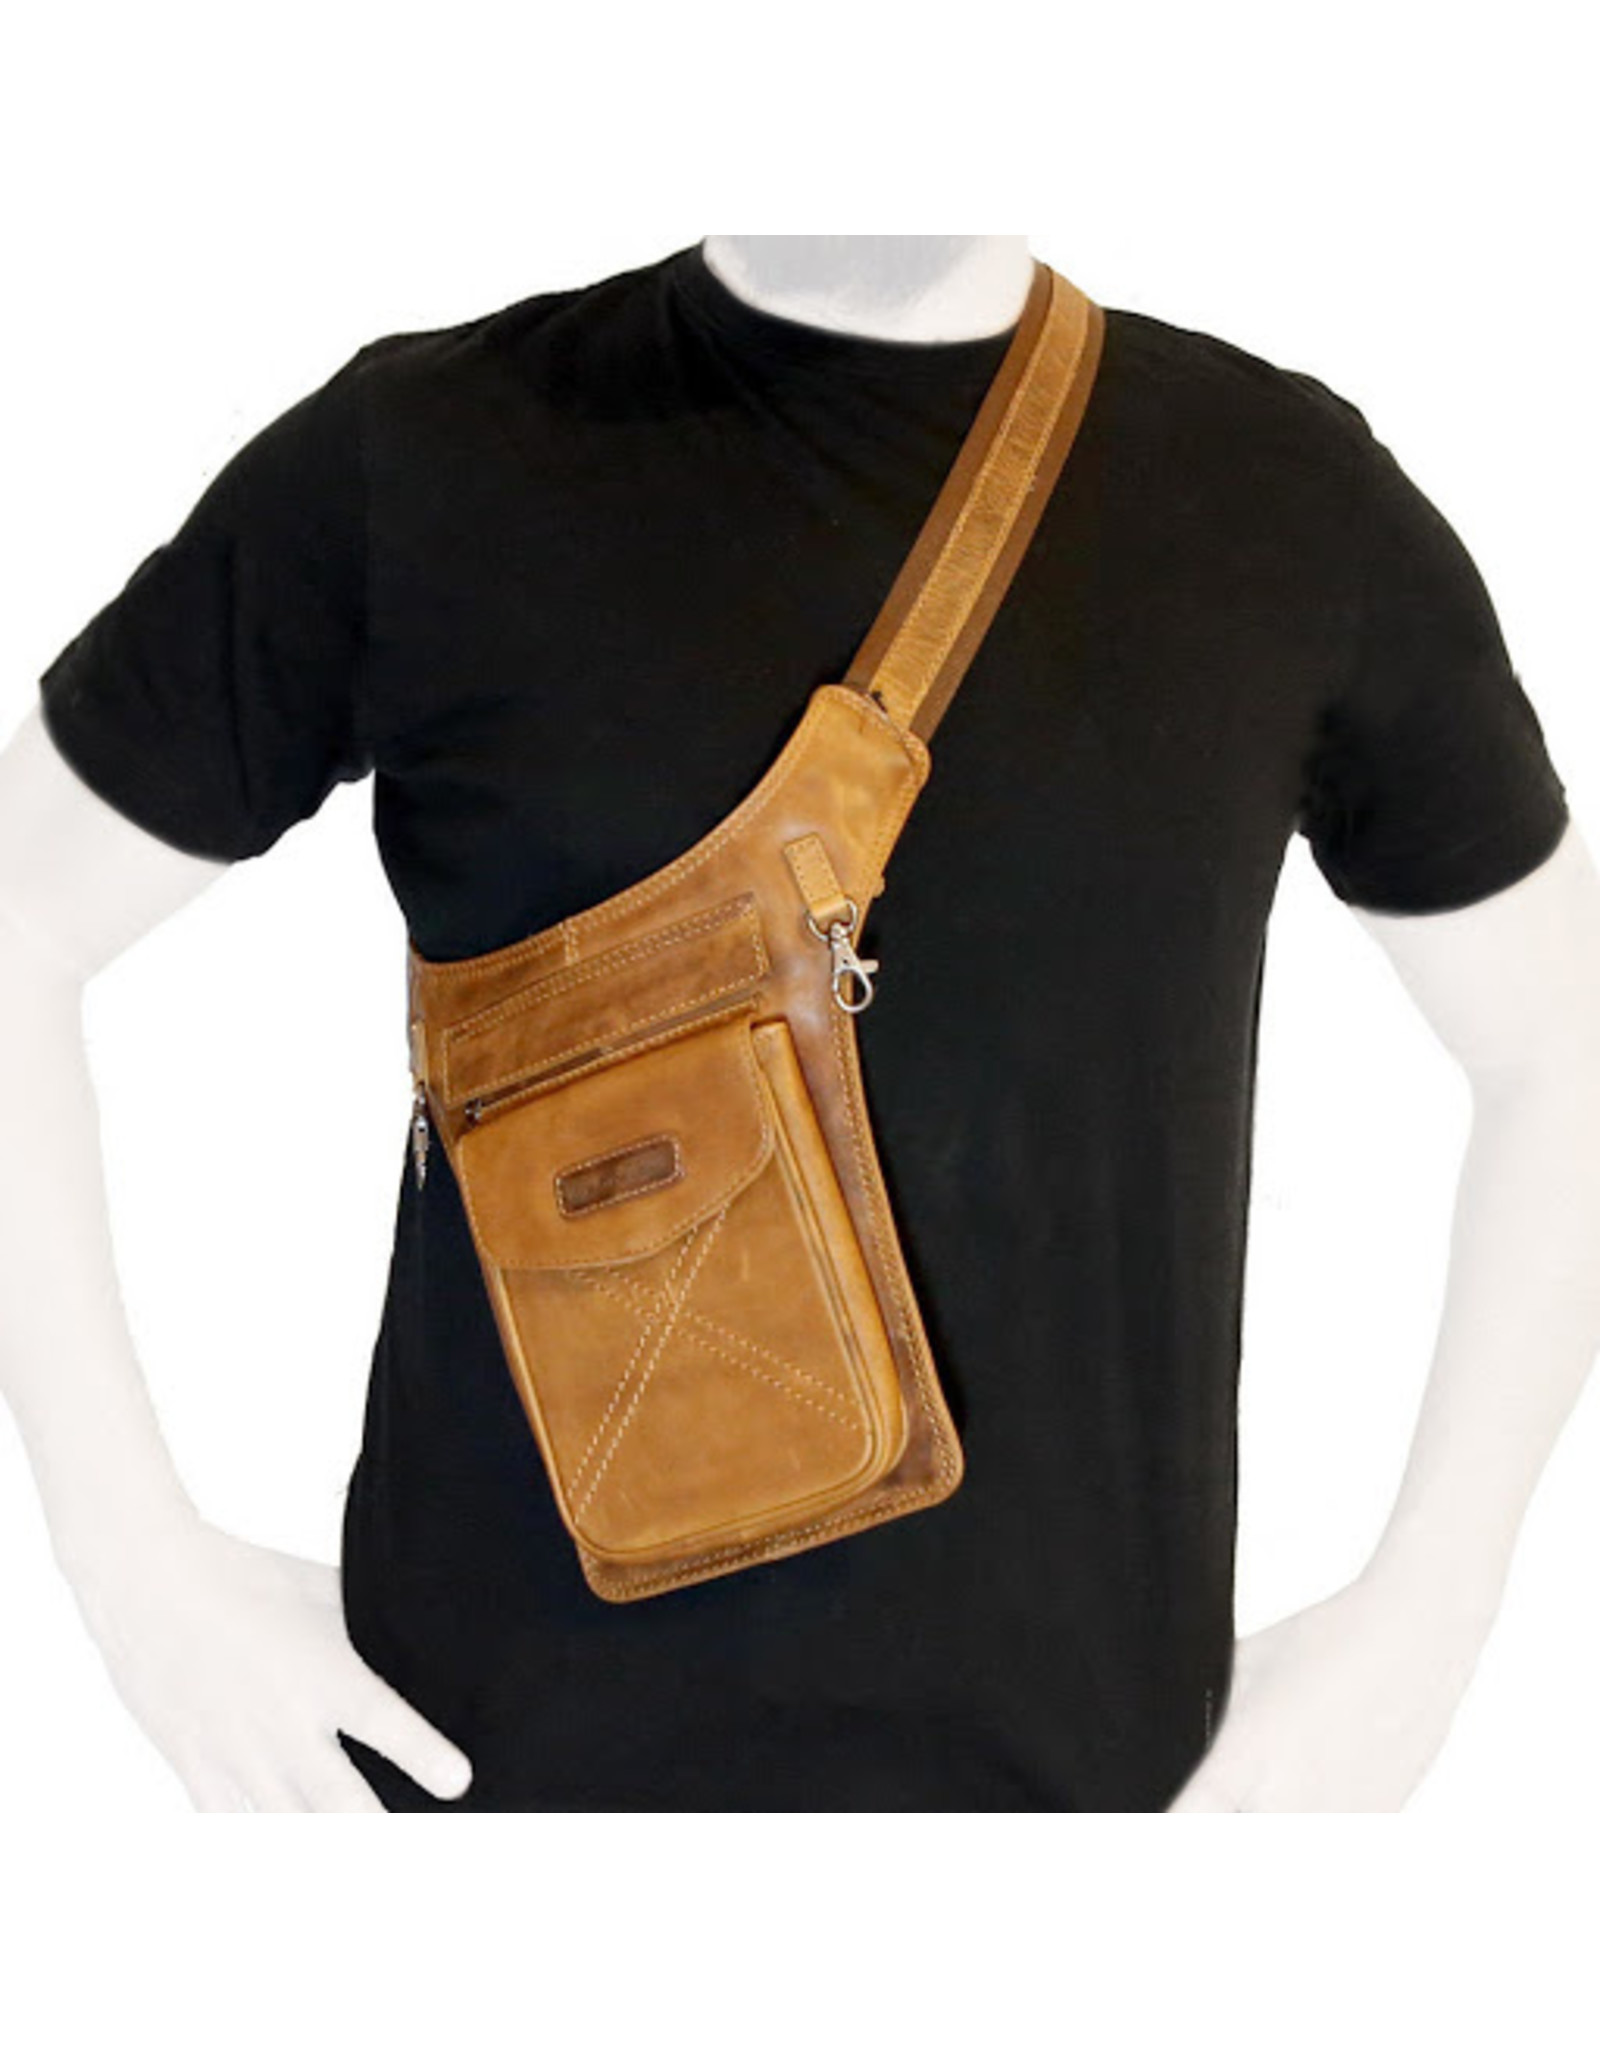 HillBurry Leather bags - Leather Waist Bag HillBurry 3113cg